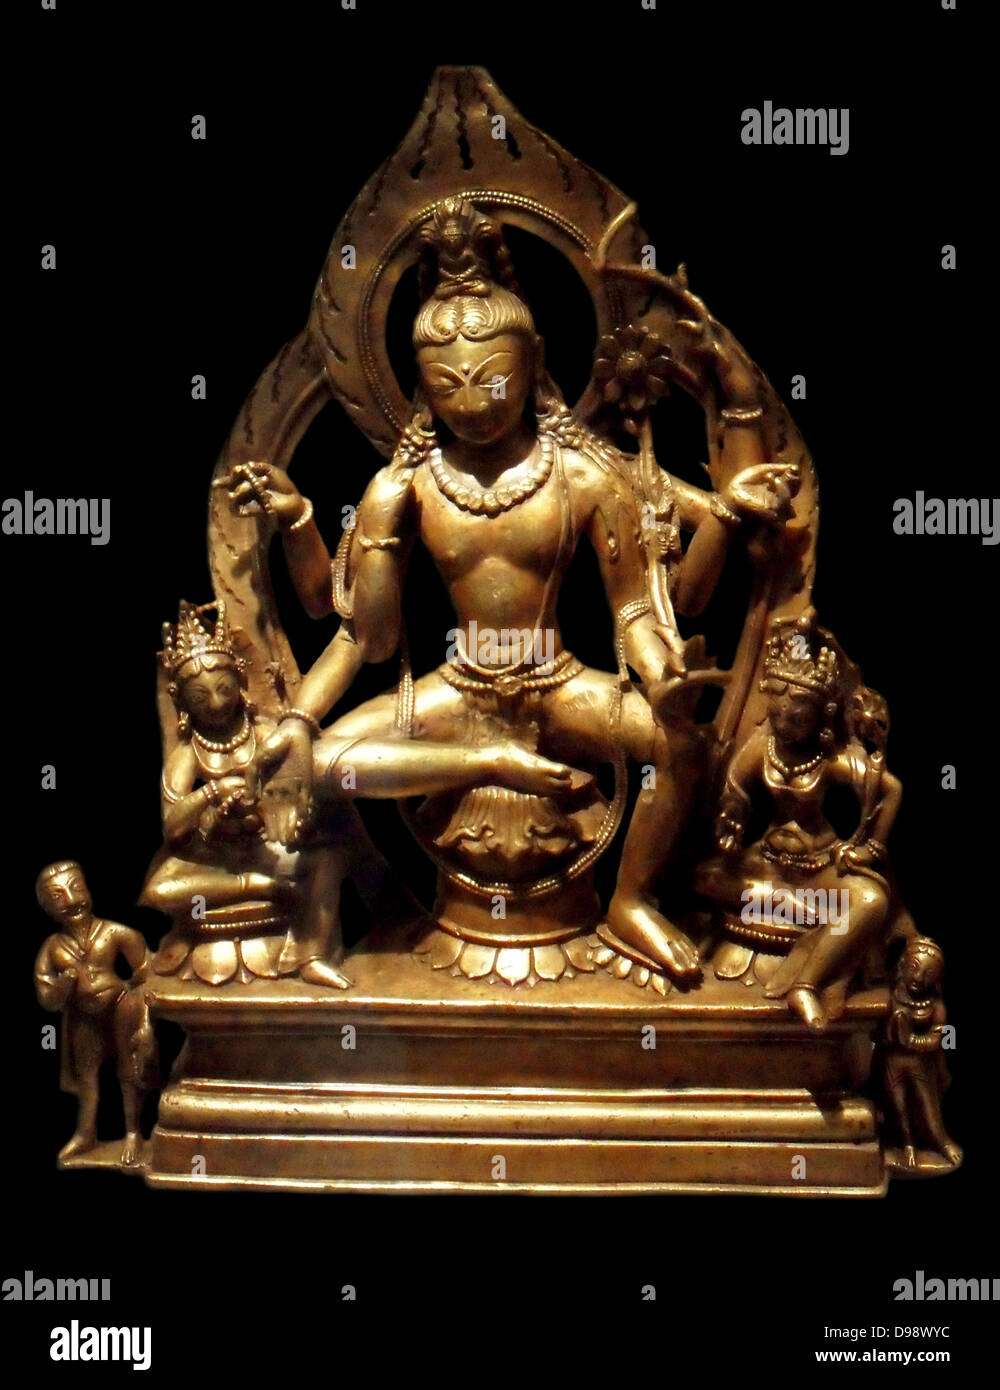 Bodhisattva-Sugatisamdarsana Lokesvara. Ende 10 - Anfang 11. Jahrhundert, Epoche der Lohara. Skulptur aus Bronze von Jammu und Kaschmir, Indien Stockfoto